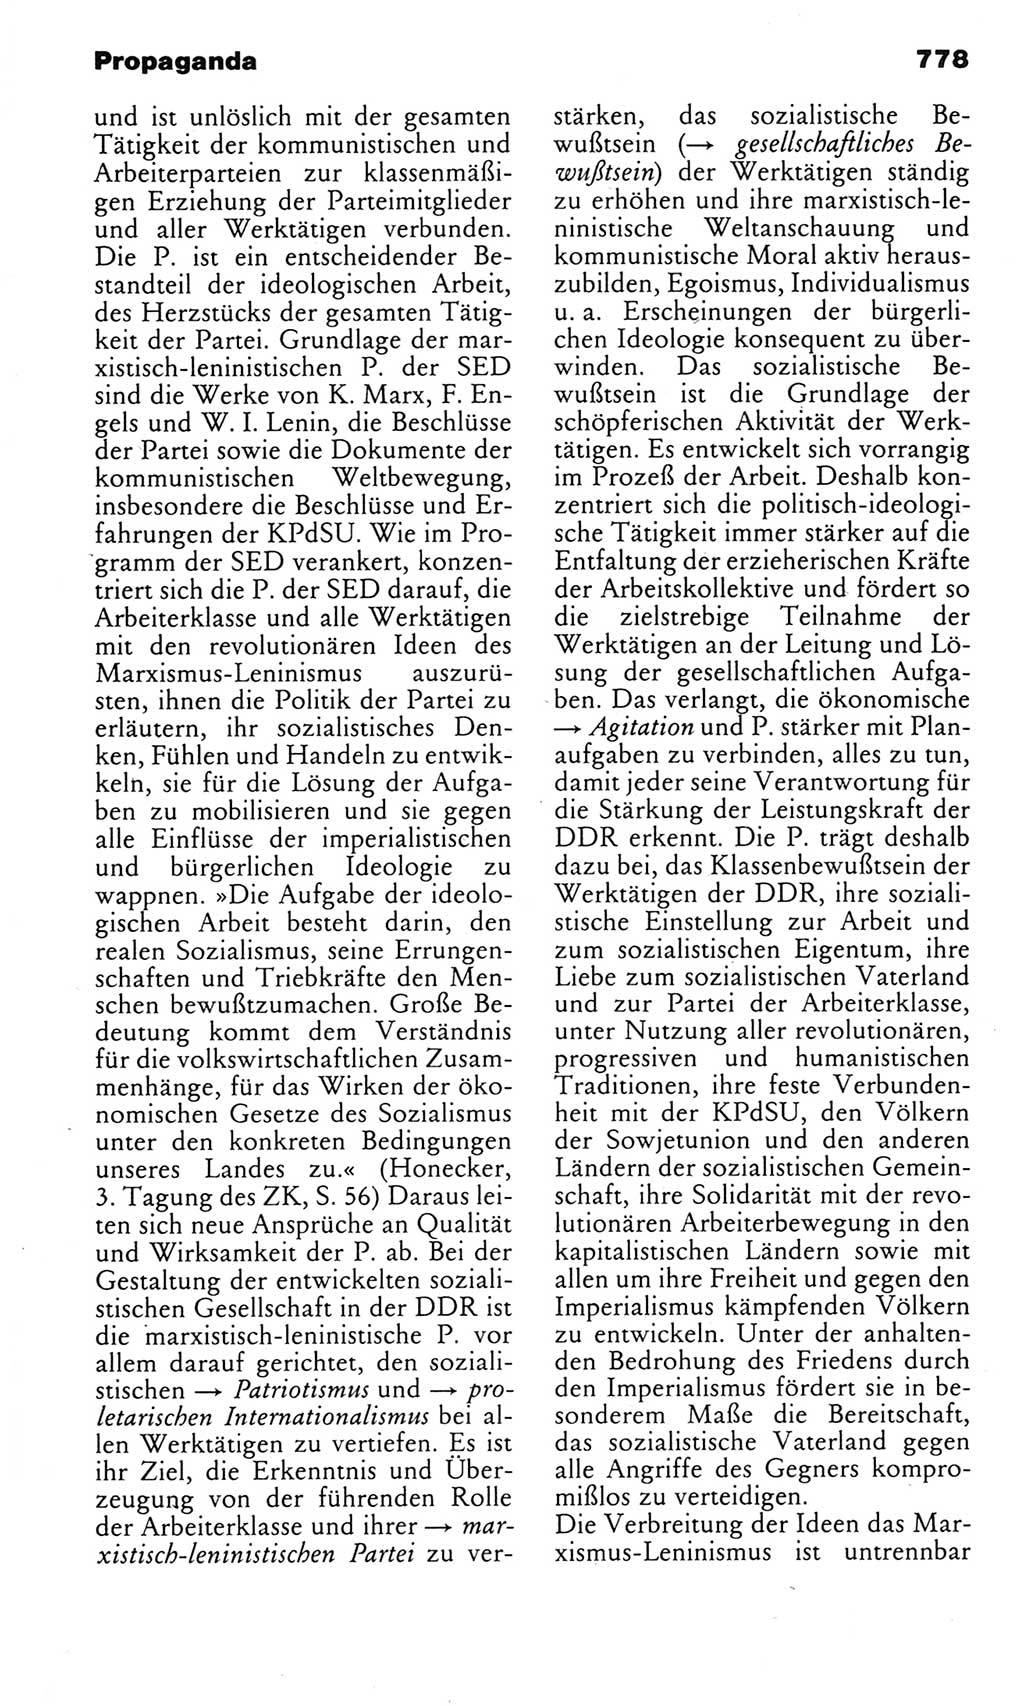 Kleines politisches Wörterbuch [Deutsche Demokratische Republik (DDR)] 1983, Seite 778 (Kl. pol. Wb. DDR 1983, S. 778)